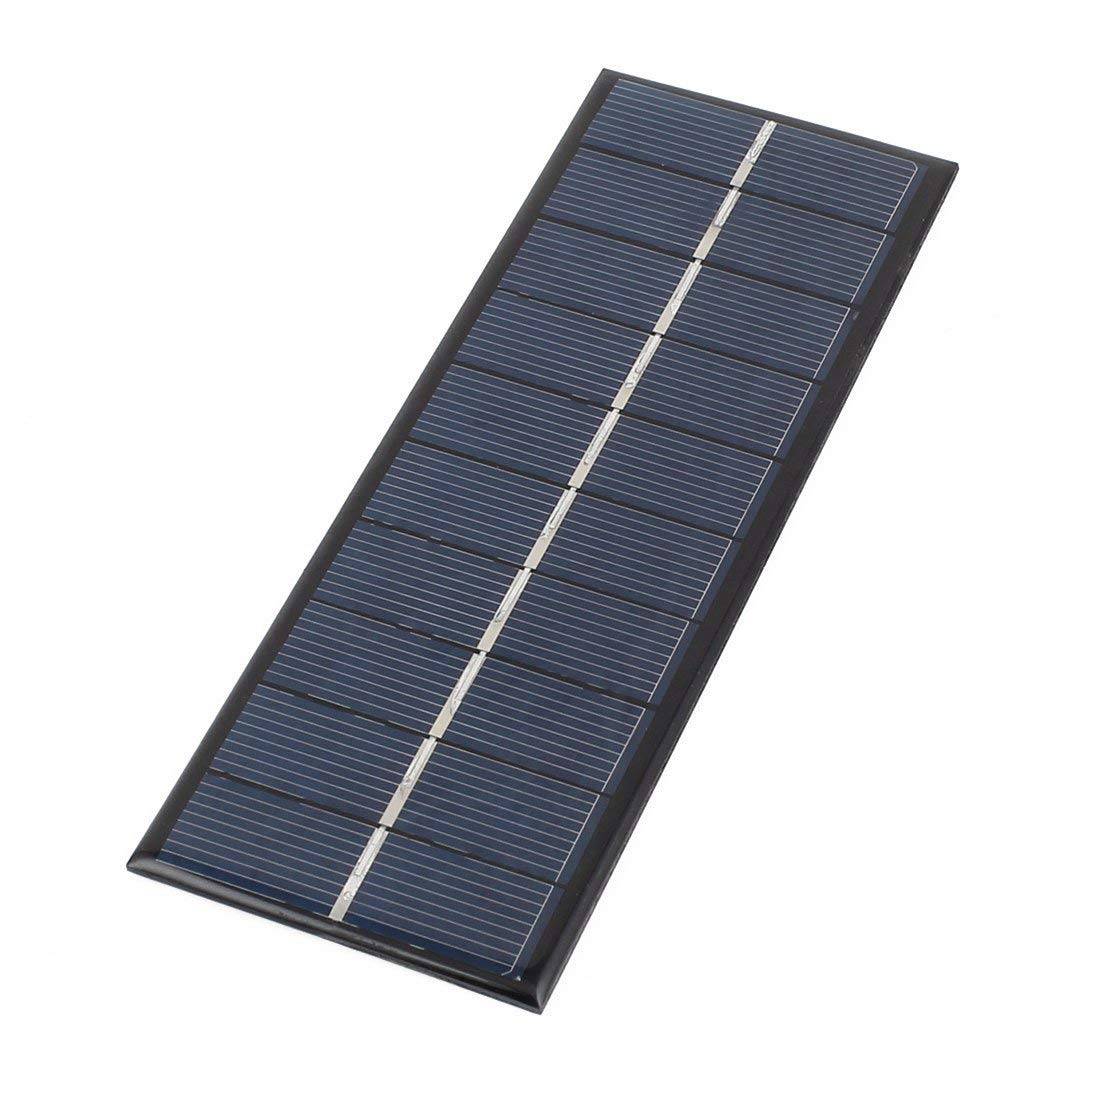 5V Solar Panel - 5V 1.8 to 2 Watt